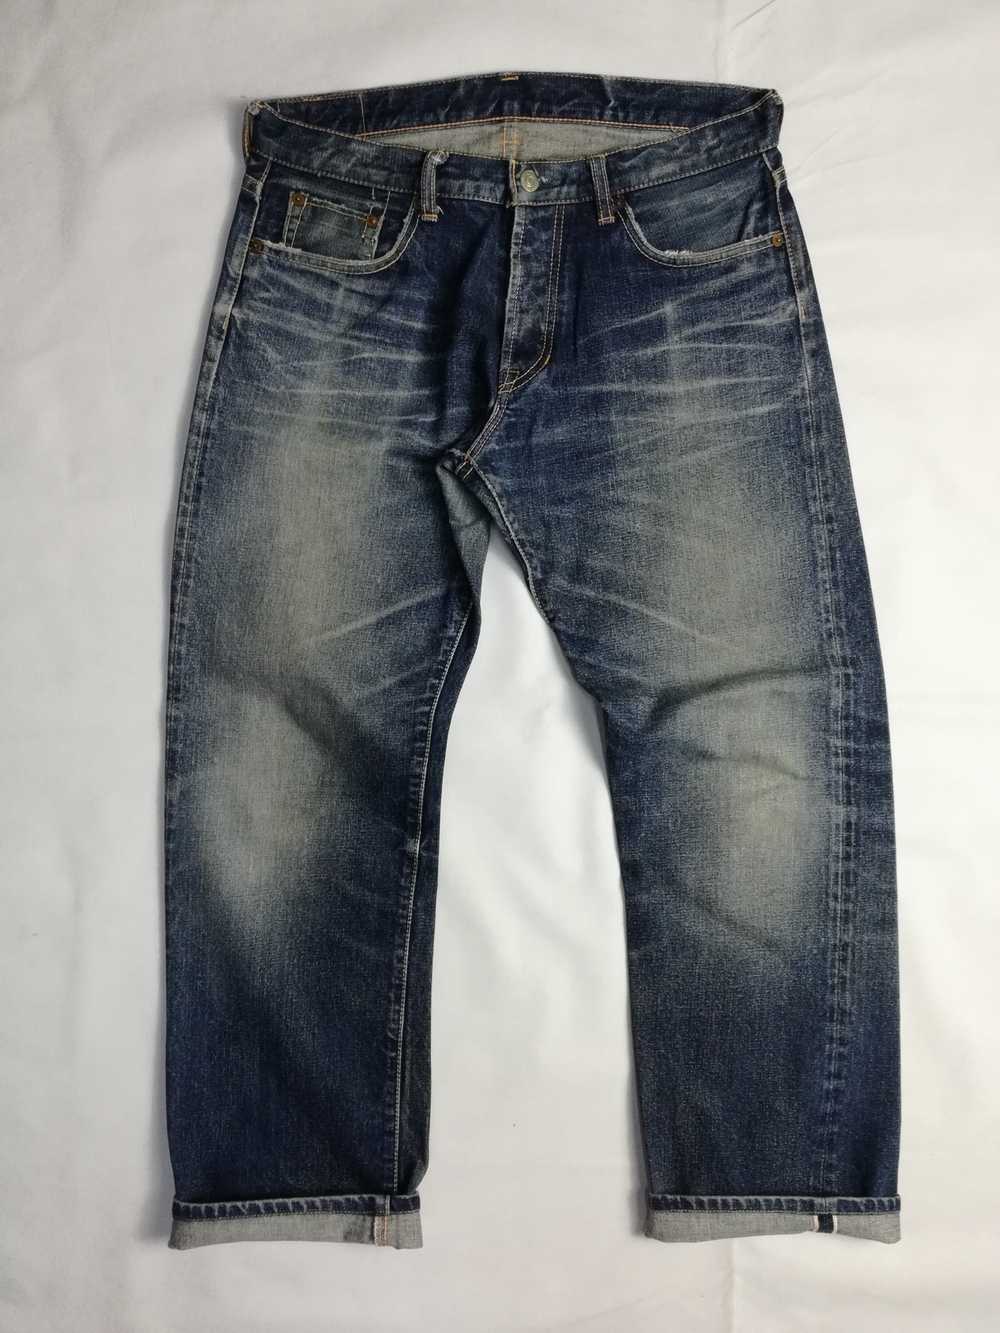 Denime × Japanese Brand DENIME Selvedge Jeans W34 - Gem